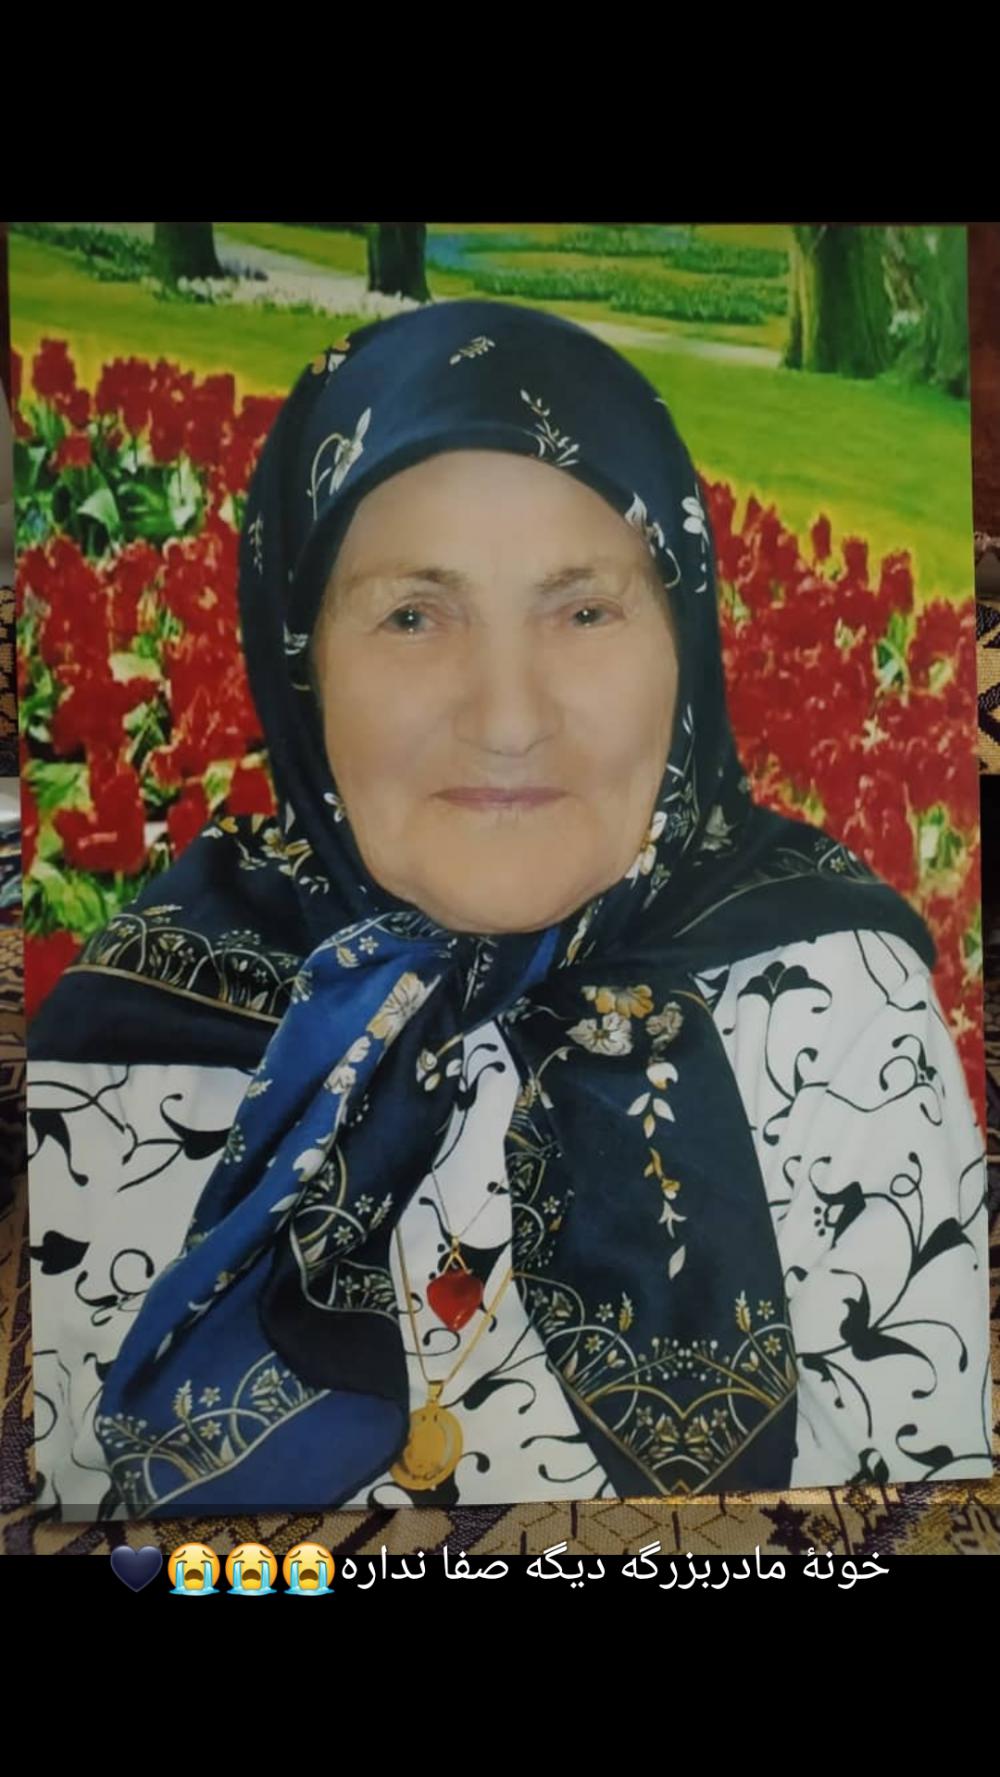 یادبود شادروان حاجیه خانم صفورا غلامی